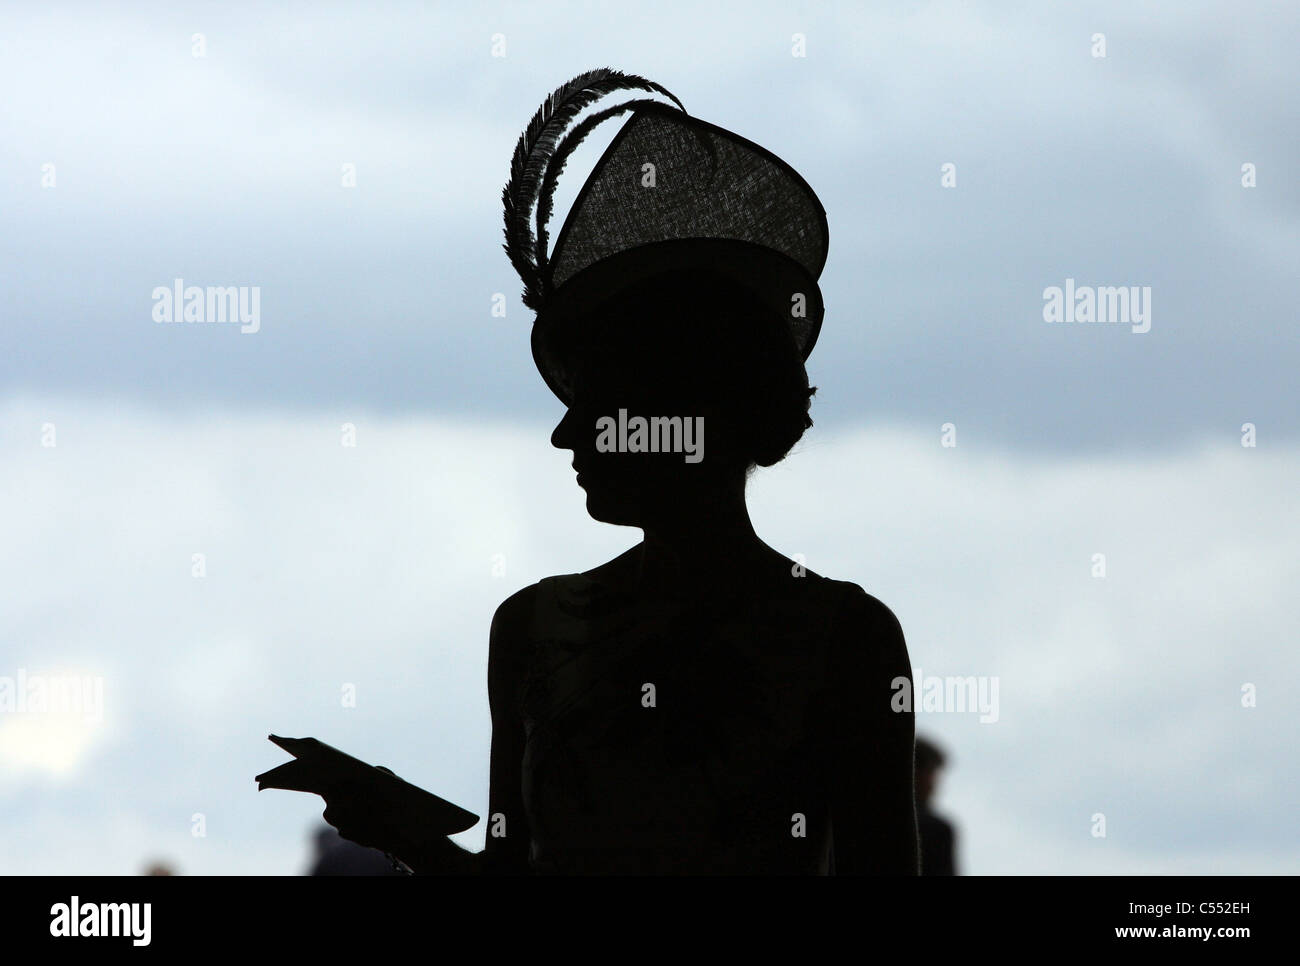 Silhouette d'une femme dans un chapeau, l'Ascot, Royaume-Uni Banque D'Images